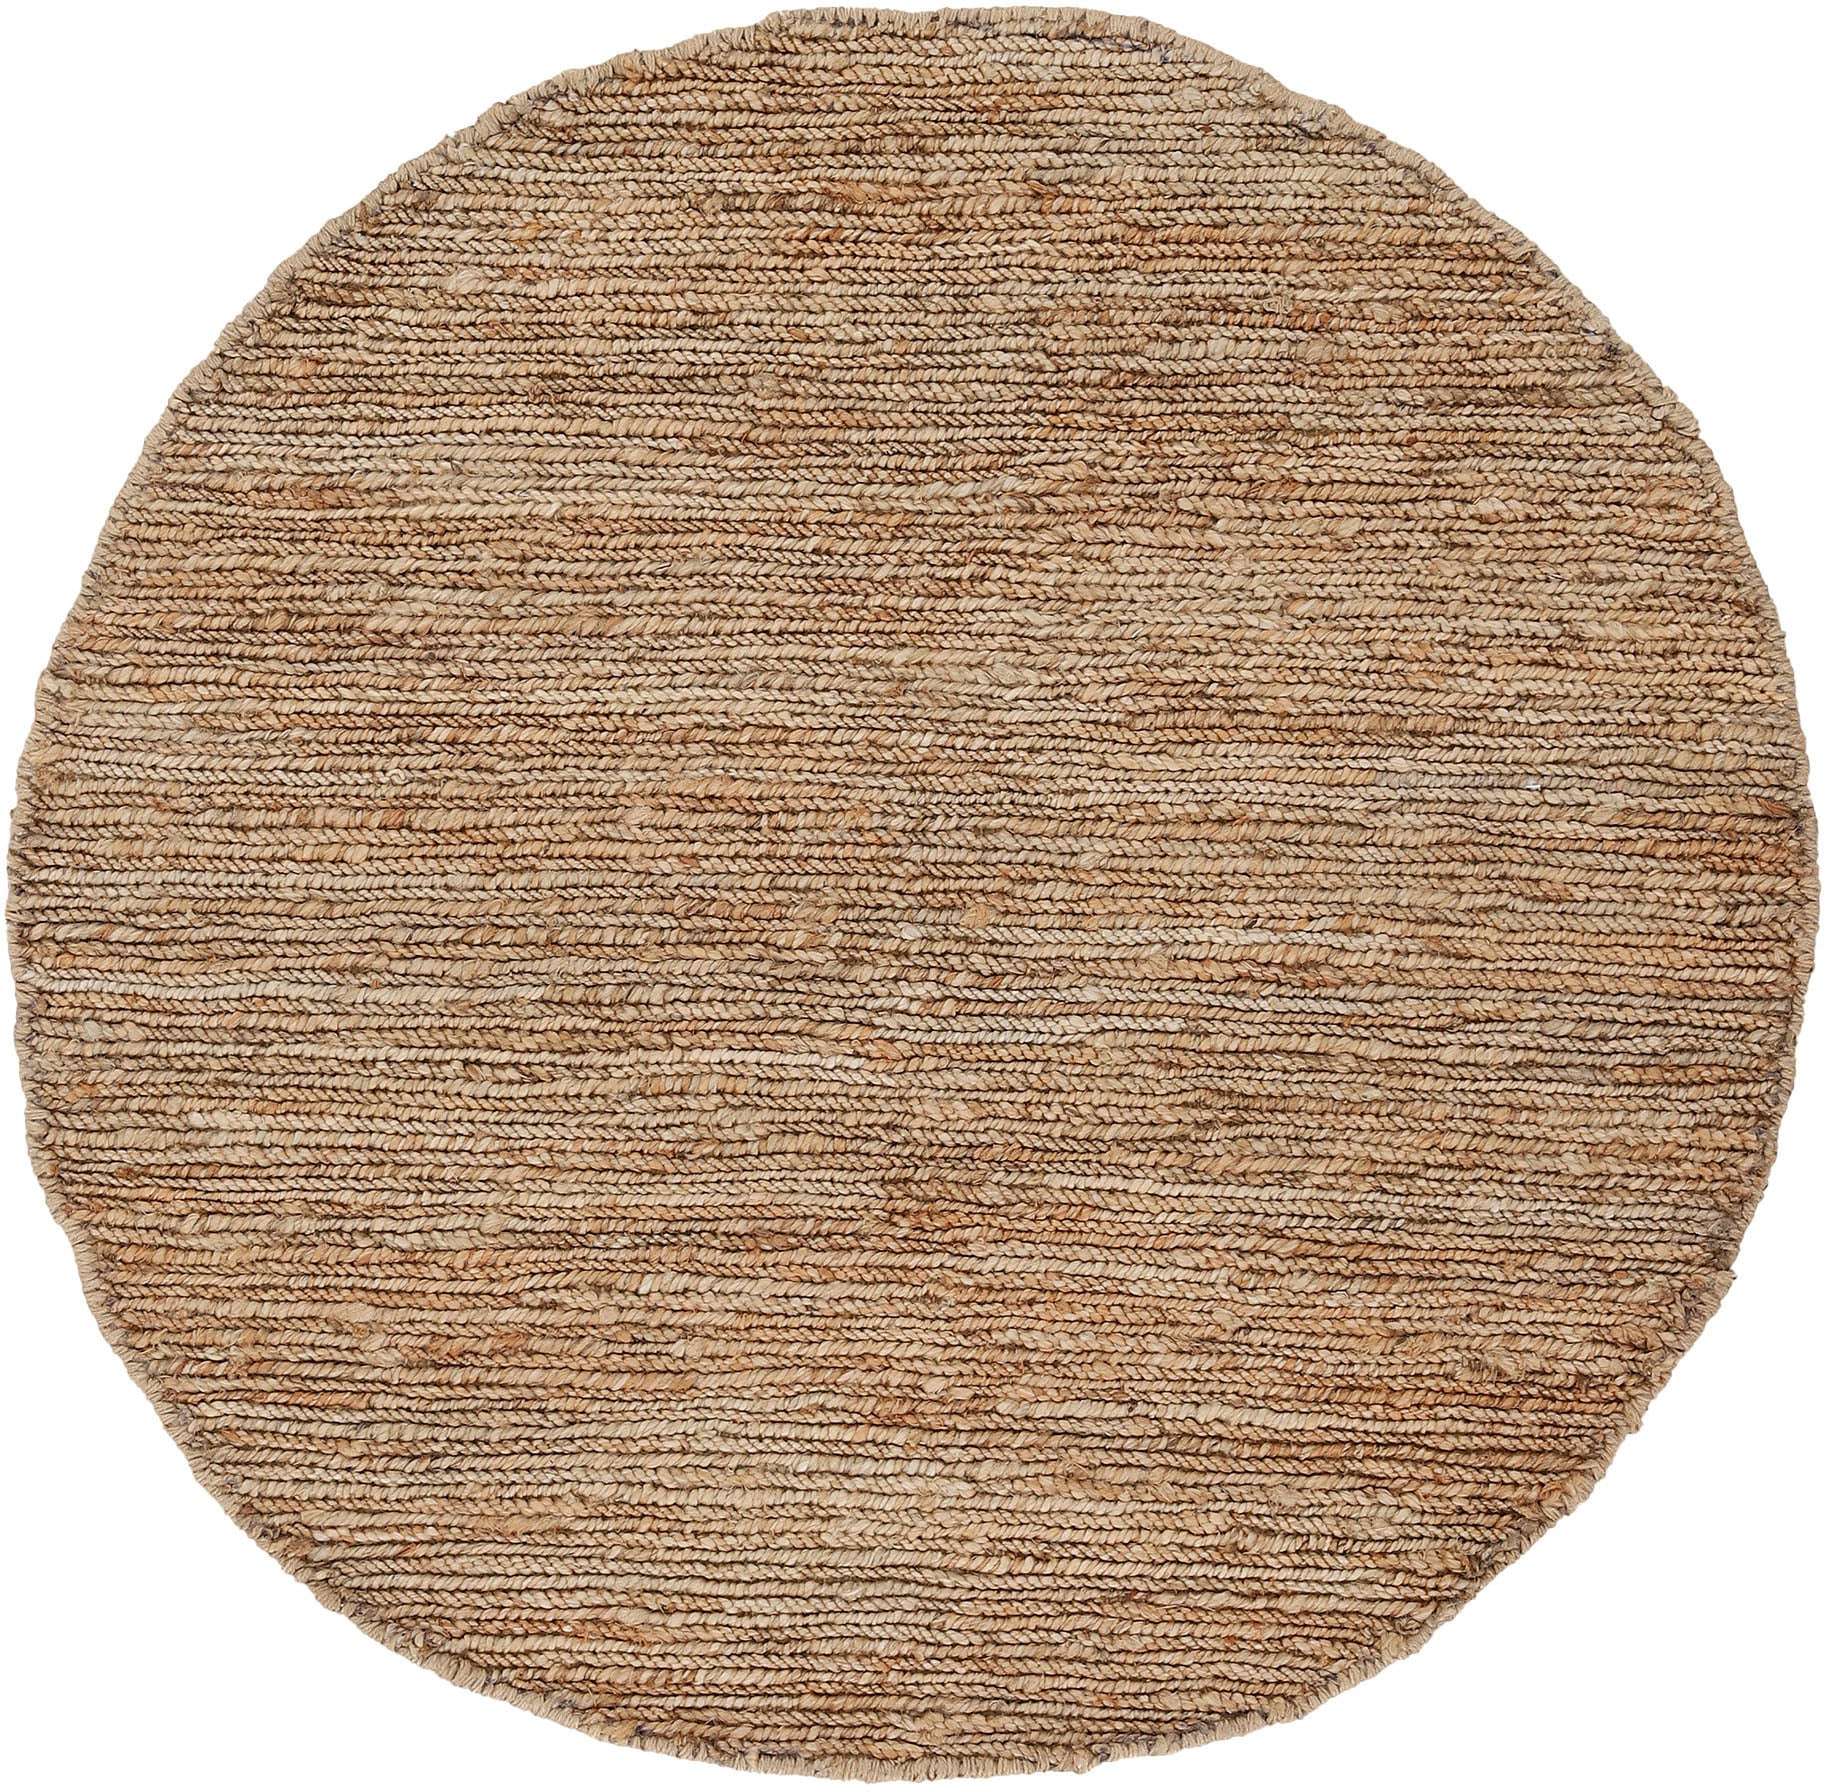 carpetfine Teppich "Nala Juteteppich", rund, wendbar, aus 100% Jute, in vielen Größen und Formen, quadratisch, rund